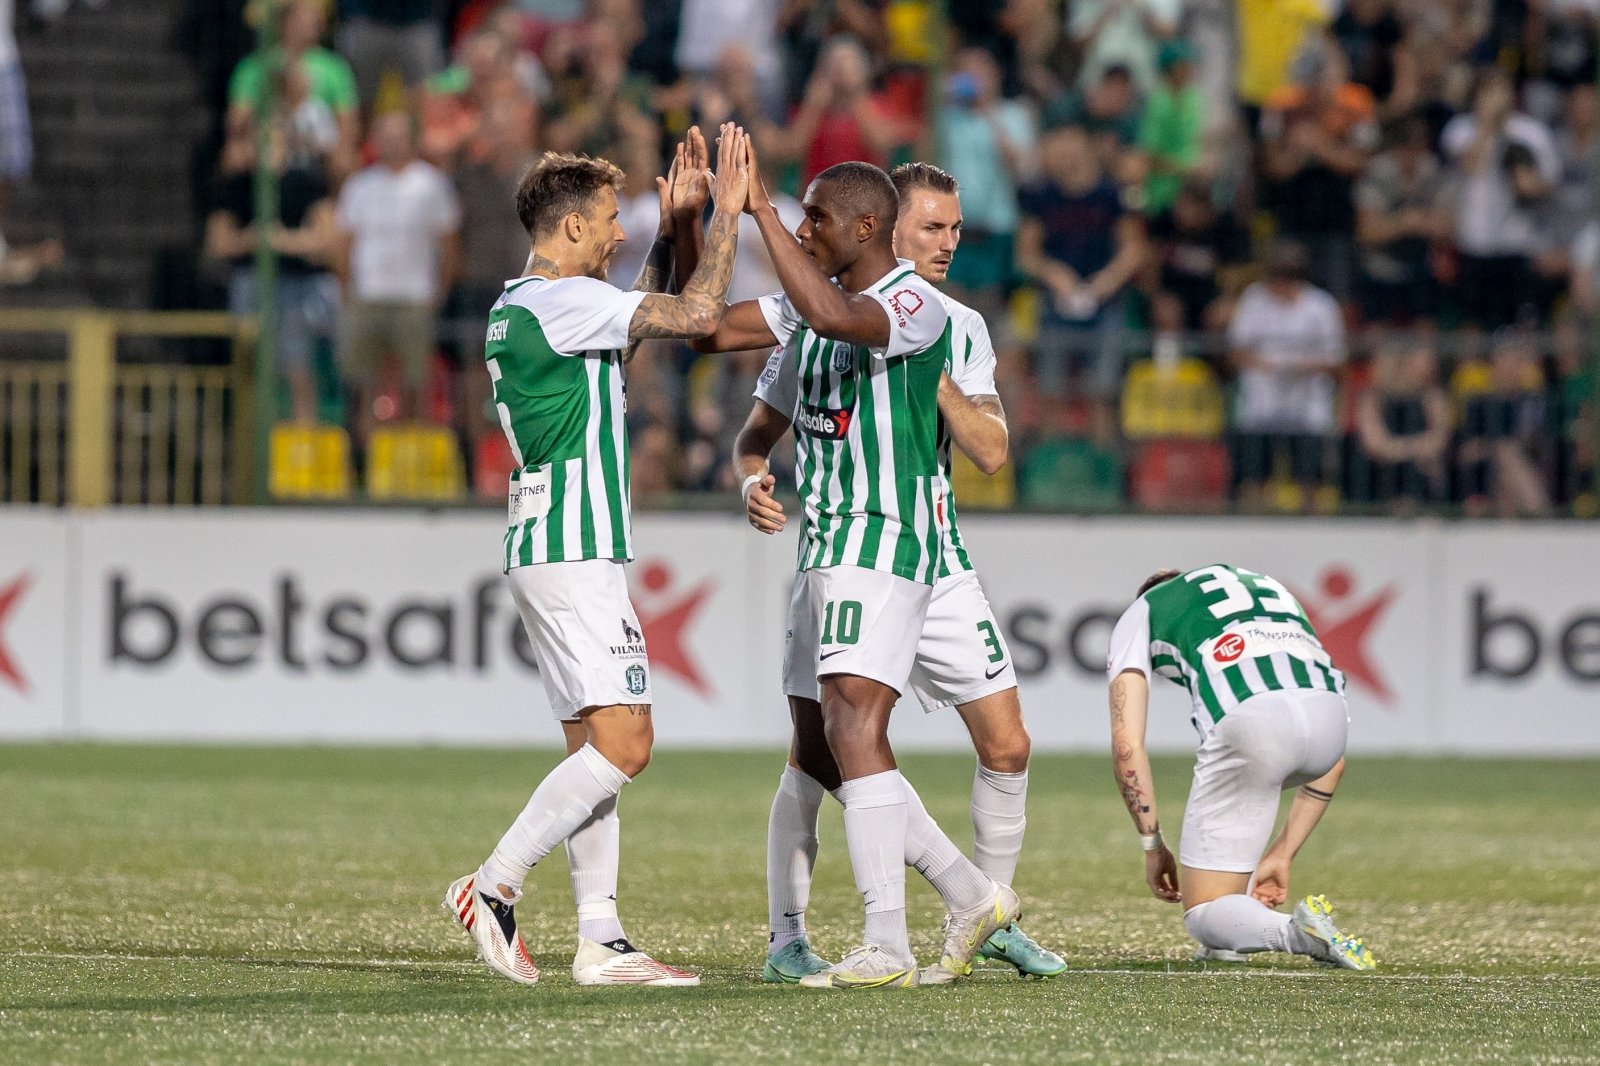 “Žalgiris” eviterà scontri con i rappresentanti dei principali paesi di calcio nella Conference League